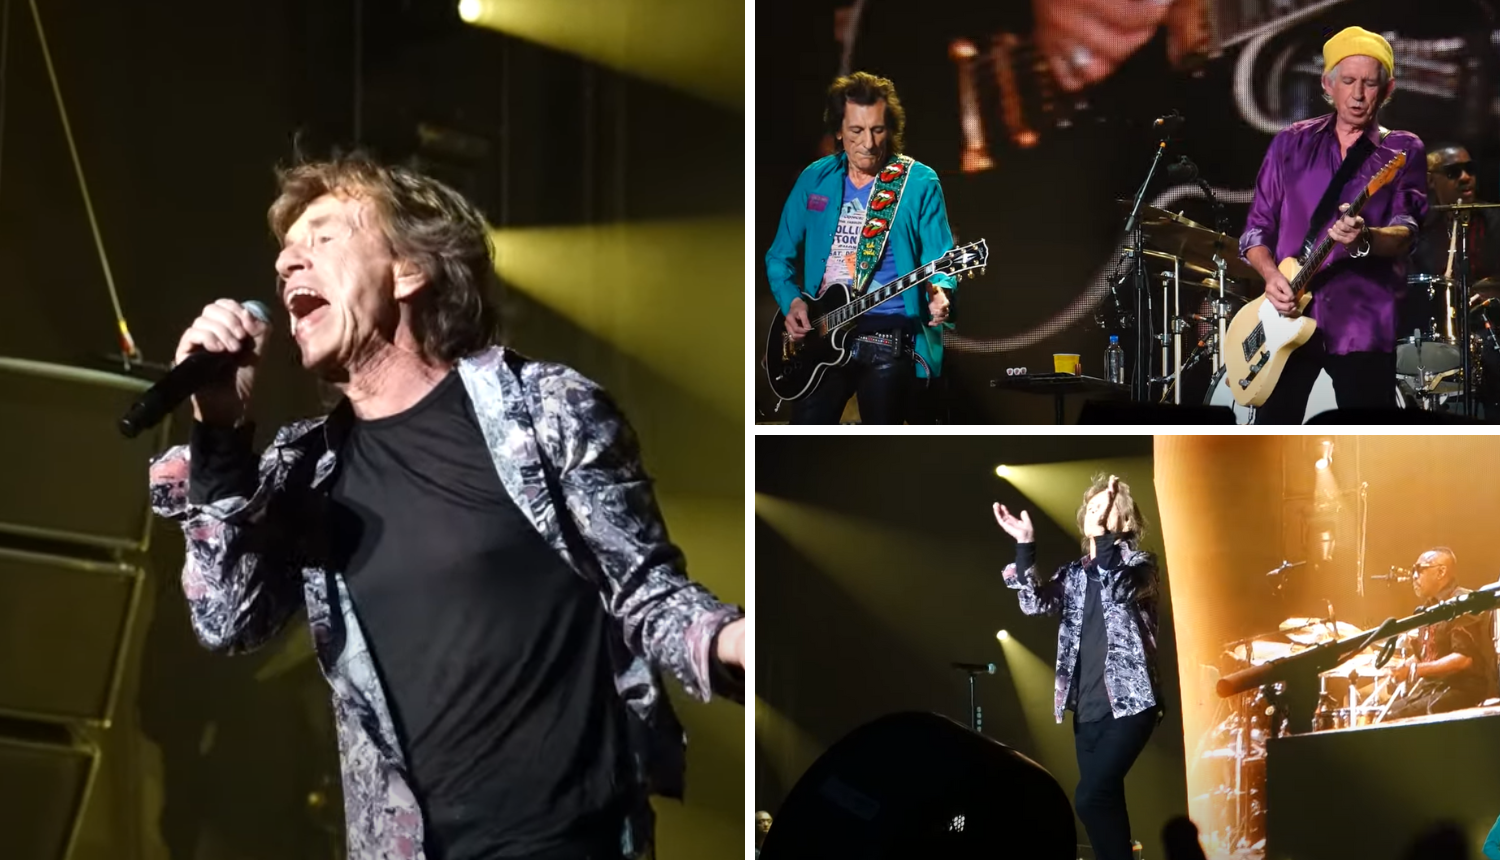 Ni korona mu ne može ništa: Pogledajte kako Mick Jagger rastura na pozornici u Milanu